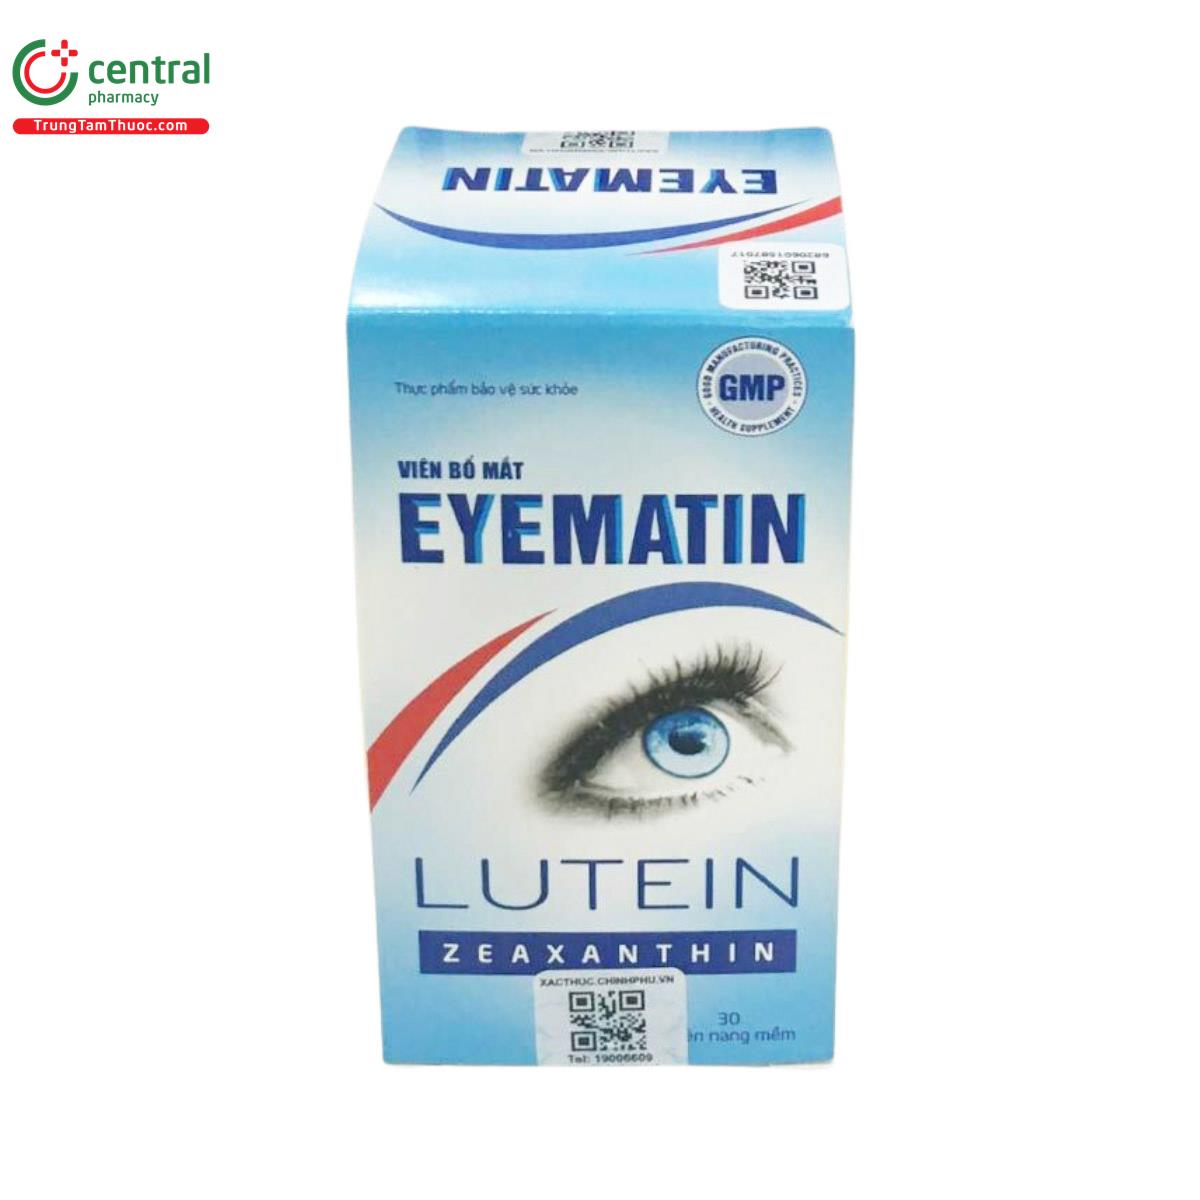 eyematin 2 D1728